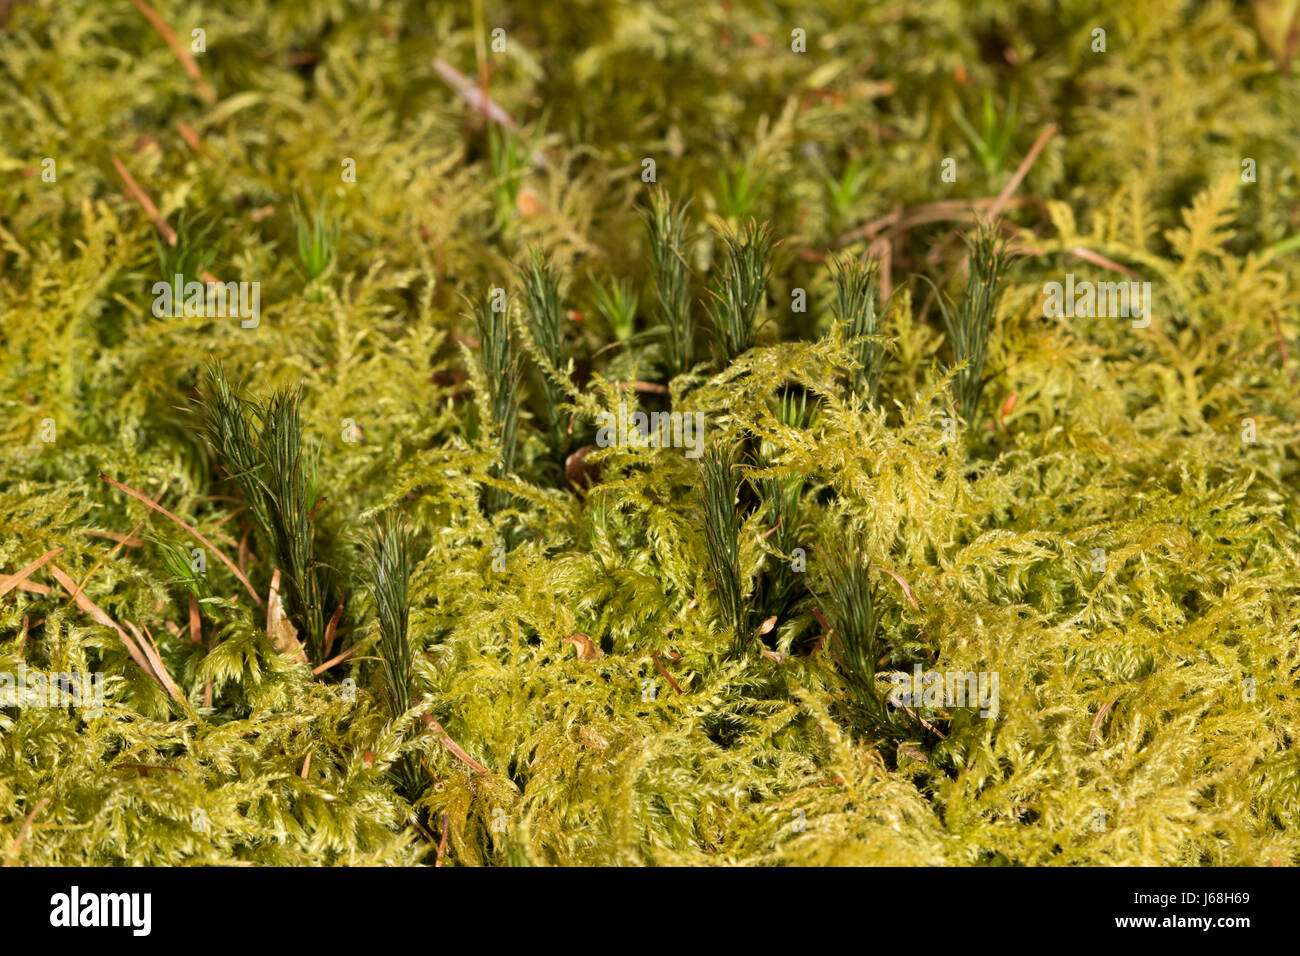 carpet of Thuidium tamariscinum (Common Tamarisk-moss) with branches of Polytrichum commune (Common Haircap moss) poking through Stock Photo